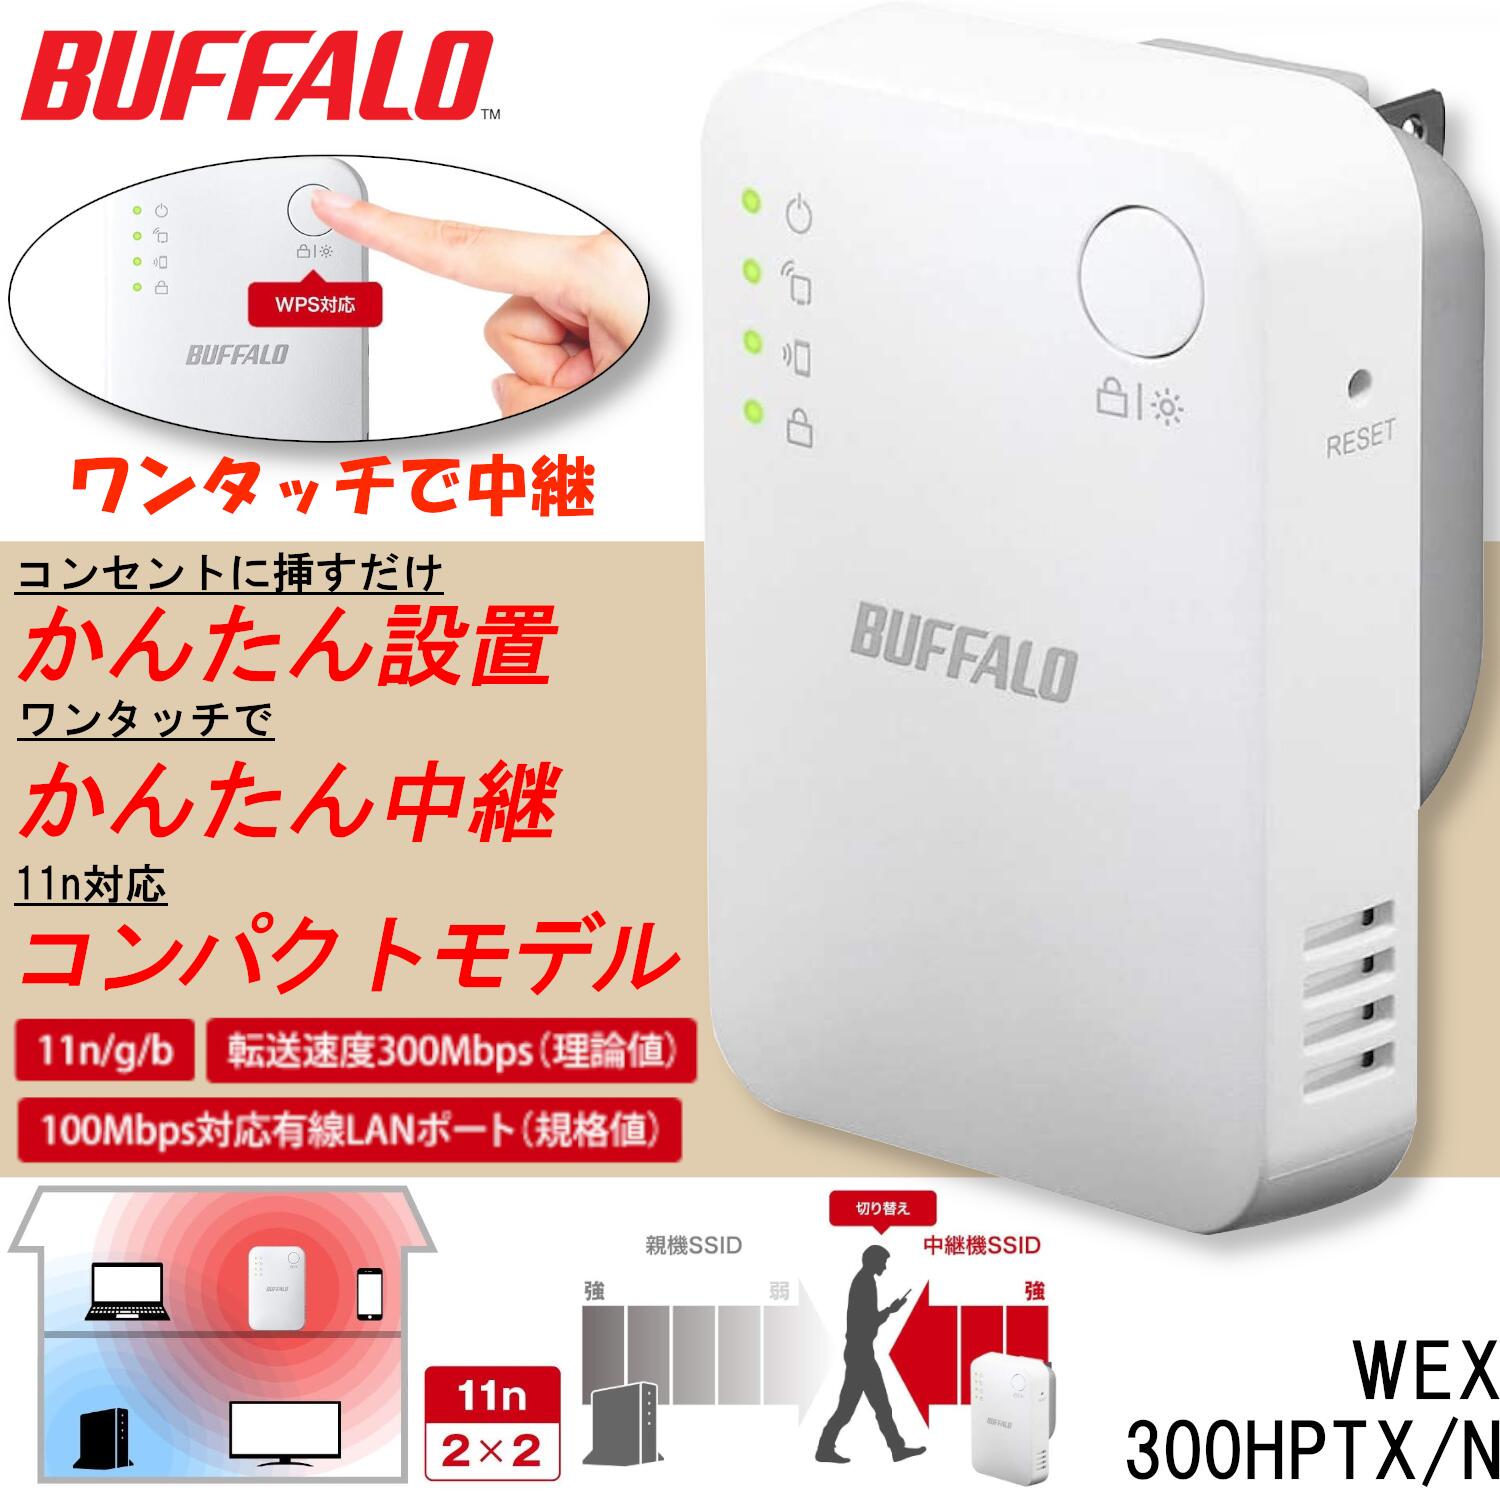 バッファロー WiFi 無線LAN 中継機 Wi-Fi4 11n g b 300Mbps コンセント